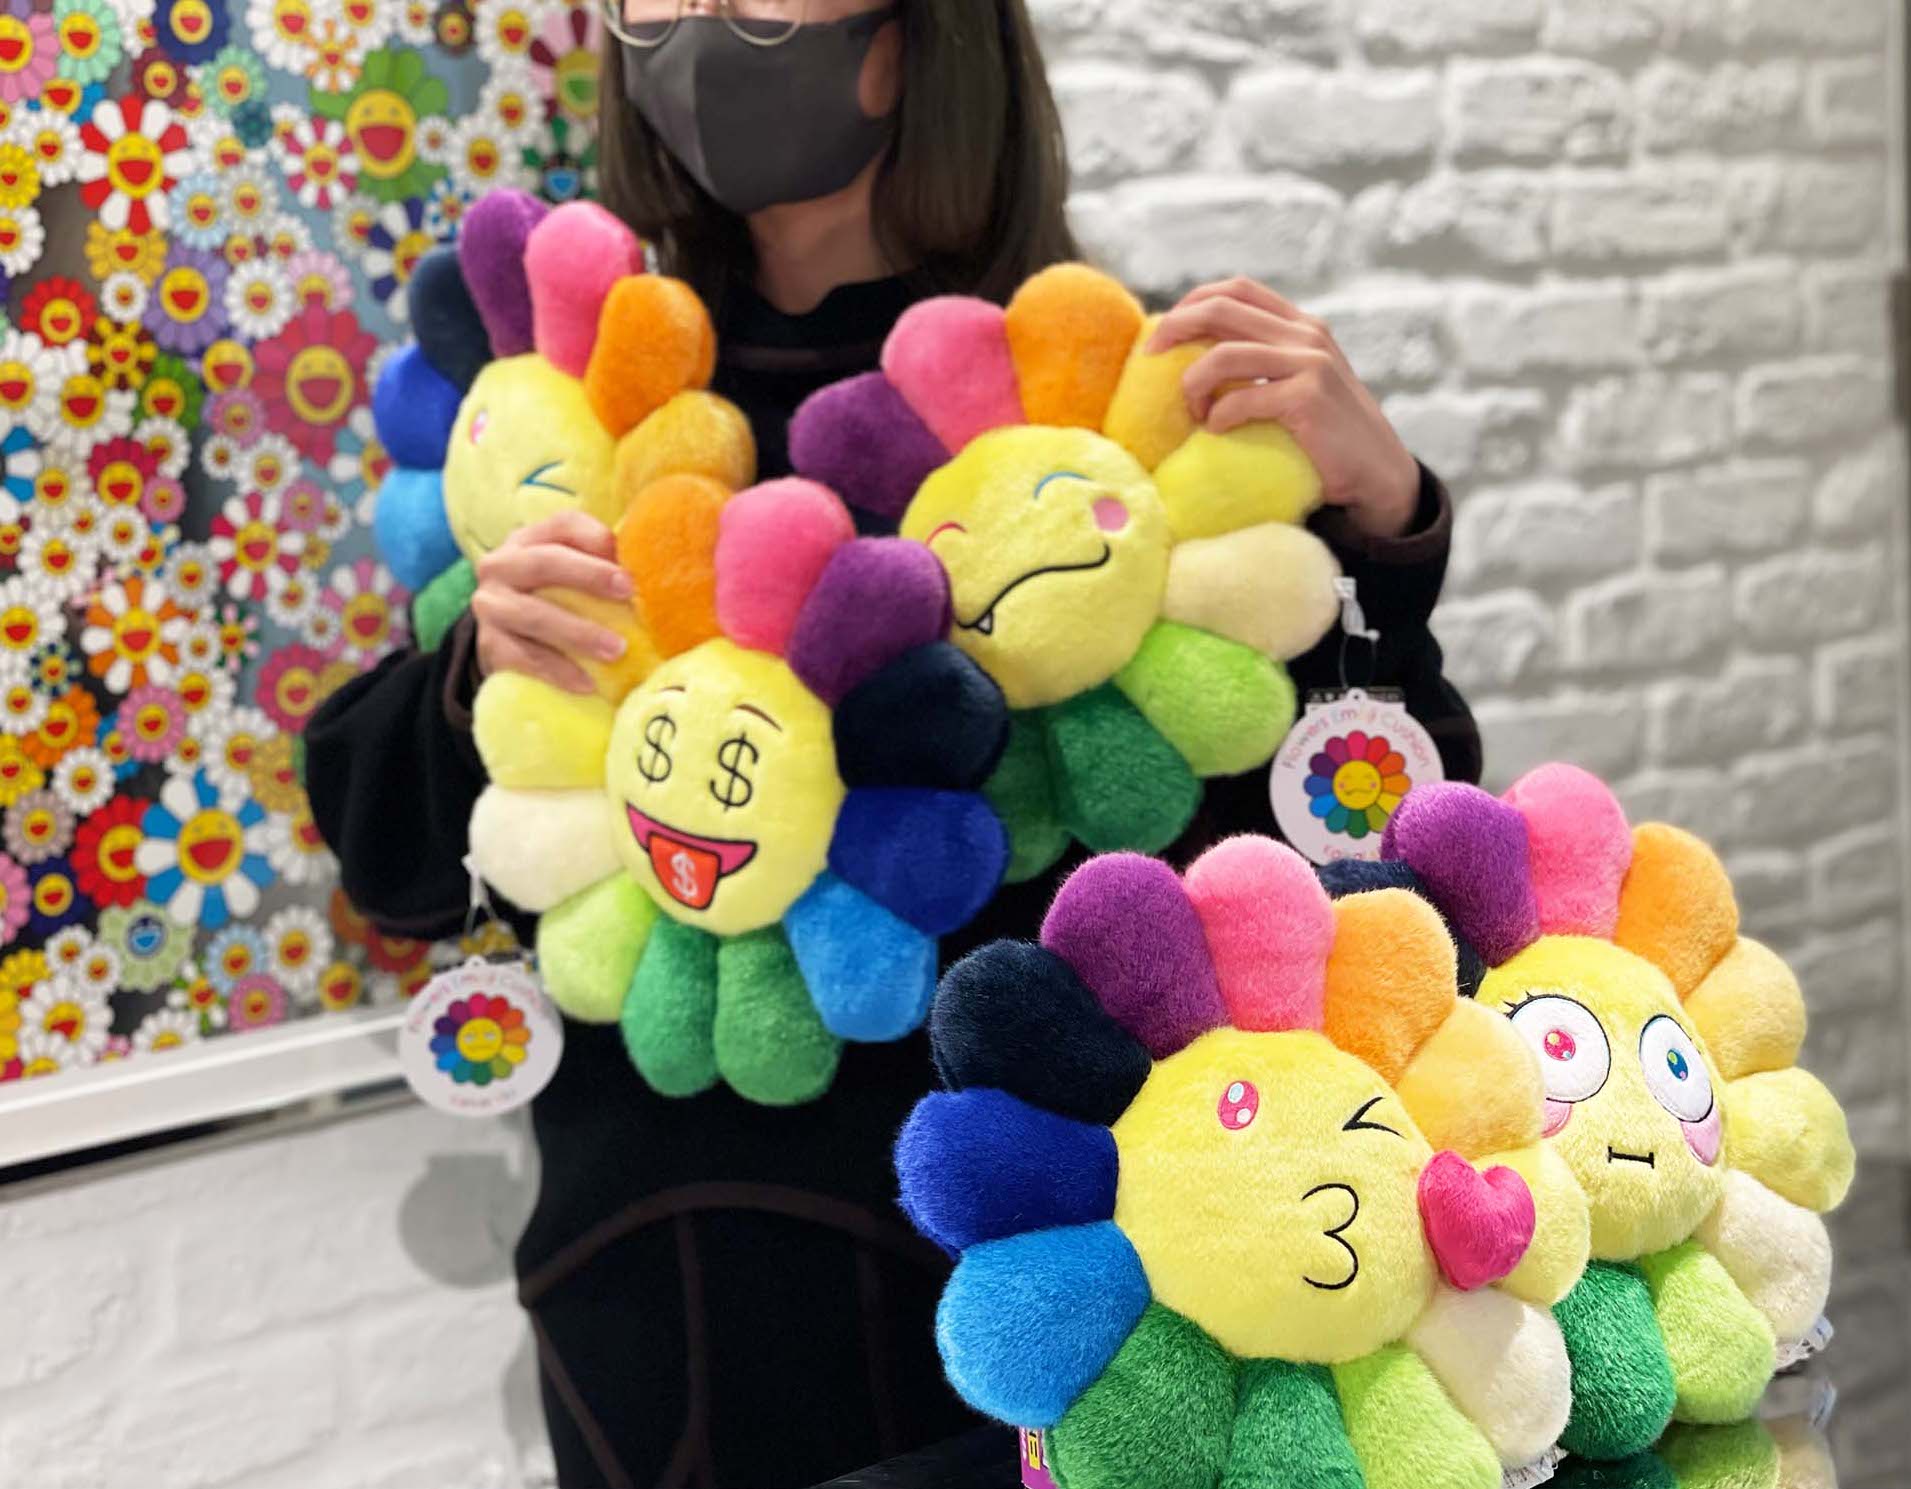 村上隆 flower emoji cushion 30cm ③ クッション www.krzysztofbialy.com